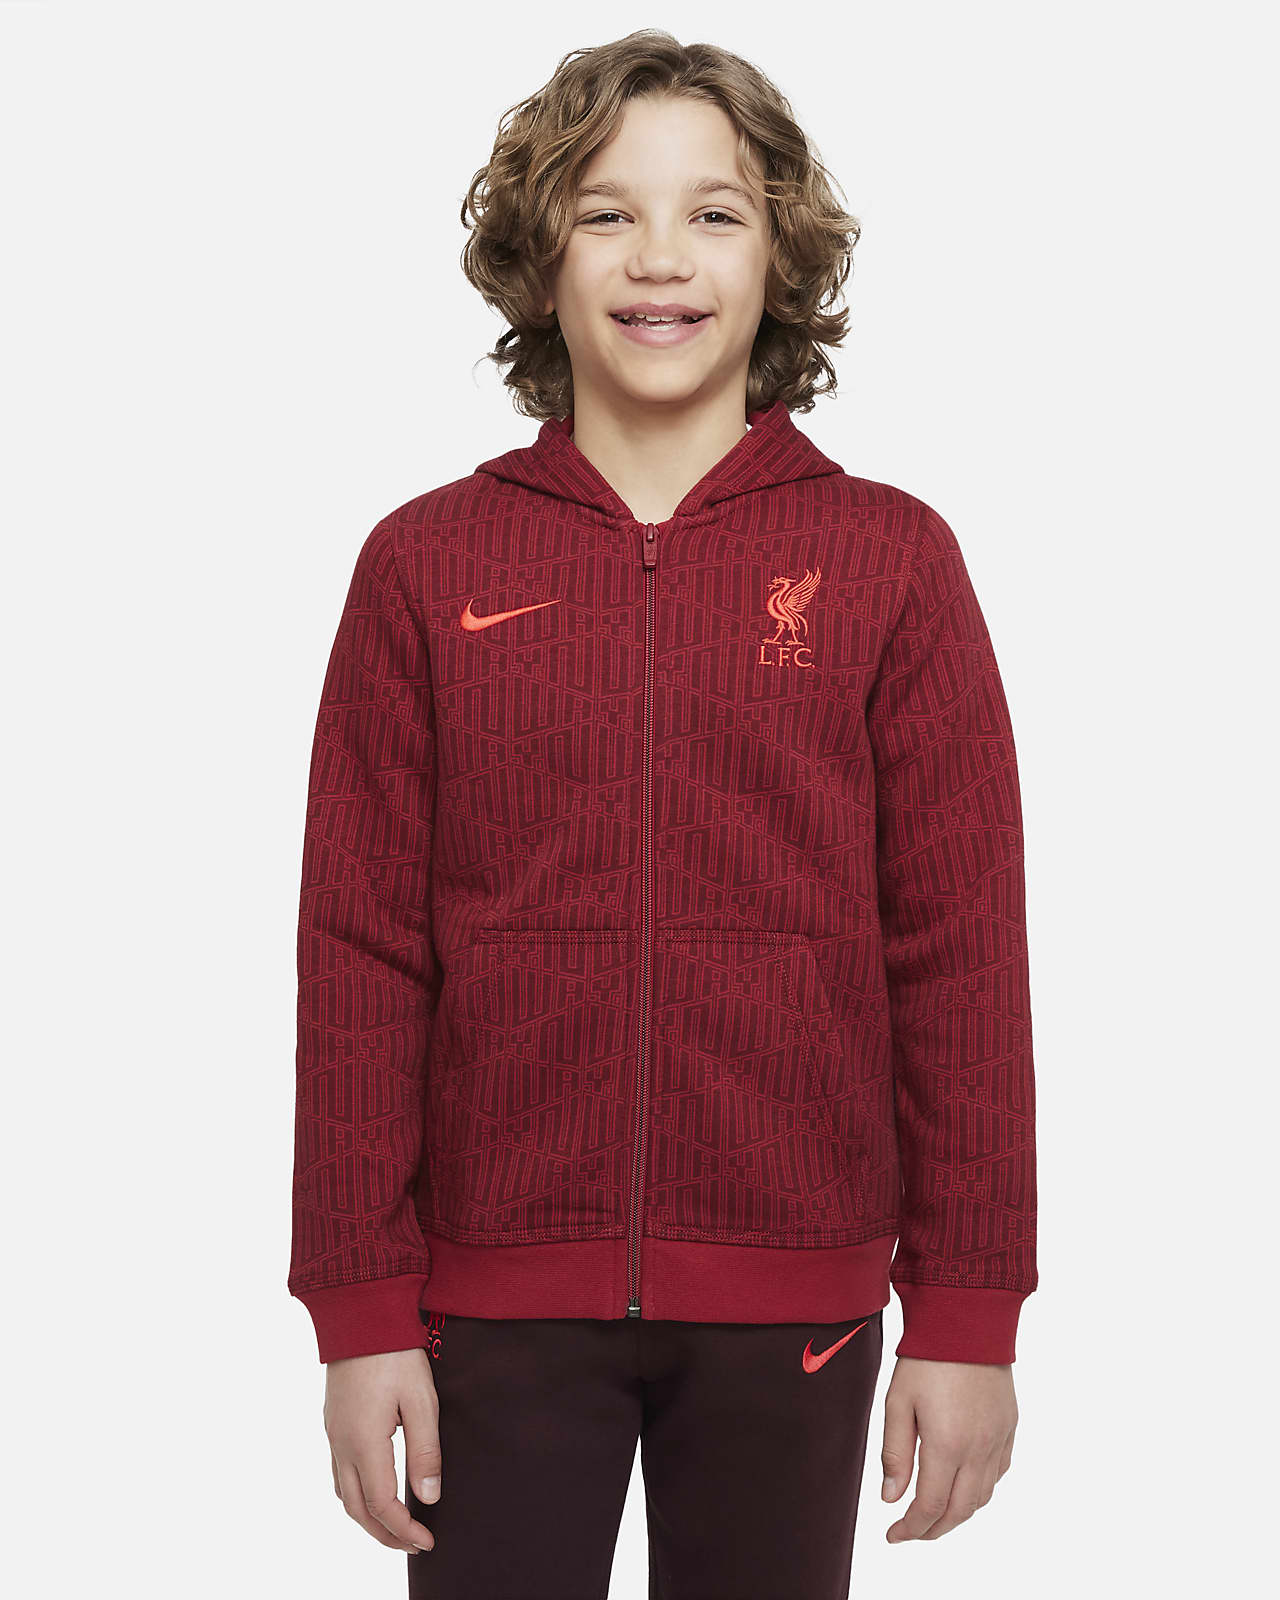 labyrint Smil Jabeth Wilson Liverpool FC-fleecehættetrøje med lynlås til større børn. Nike DK